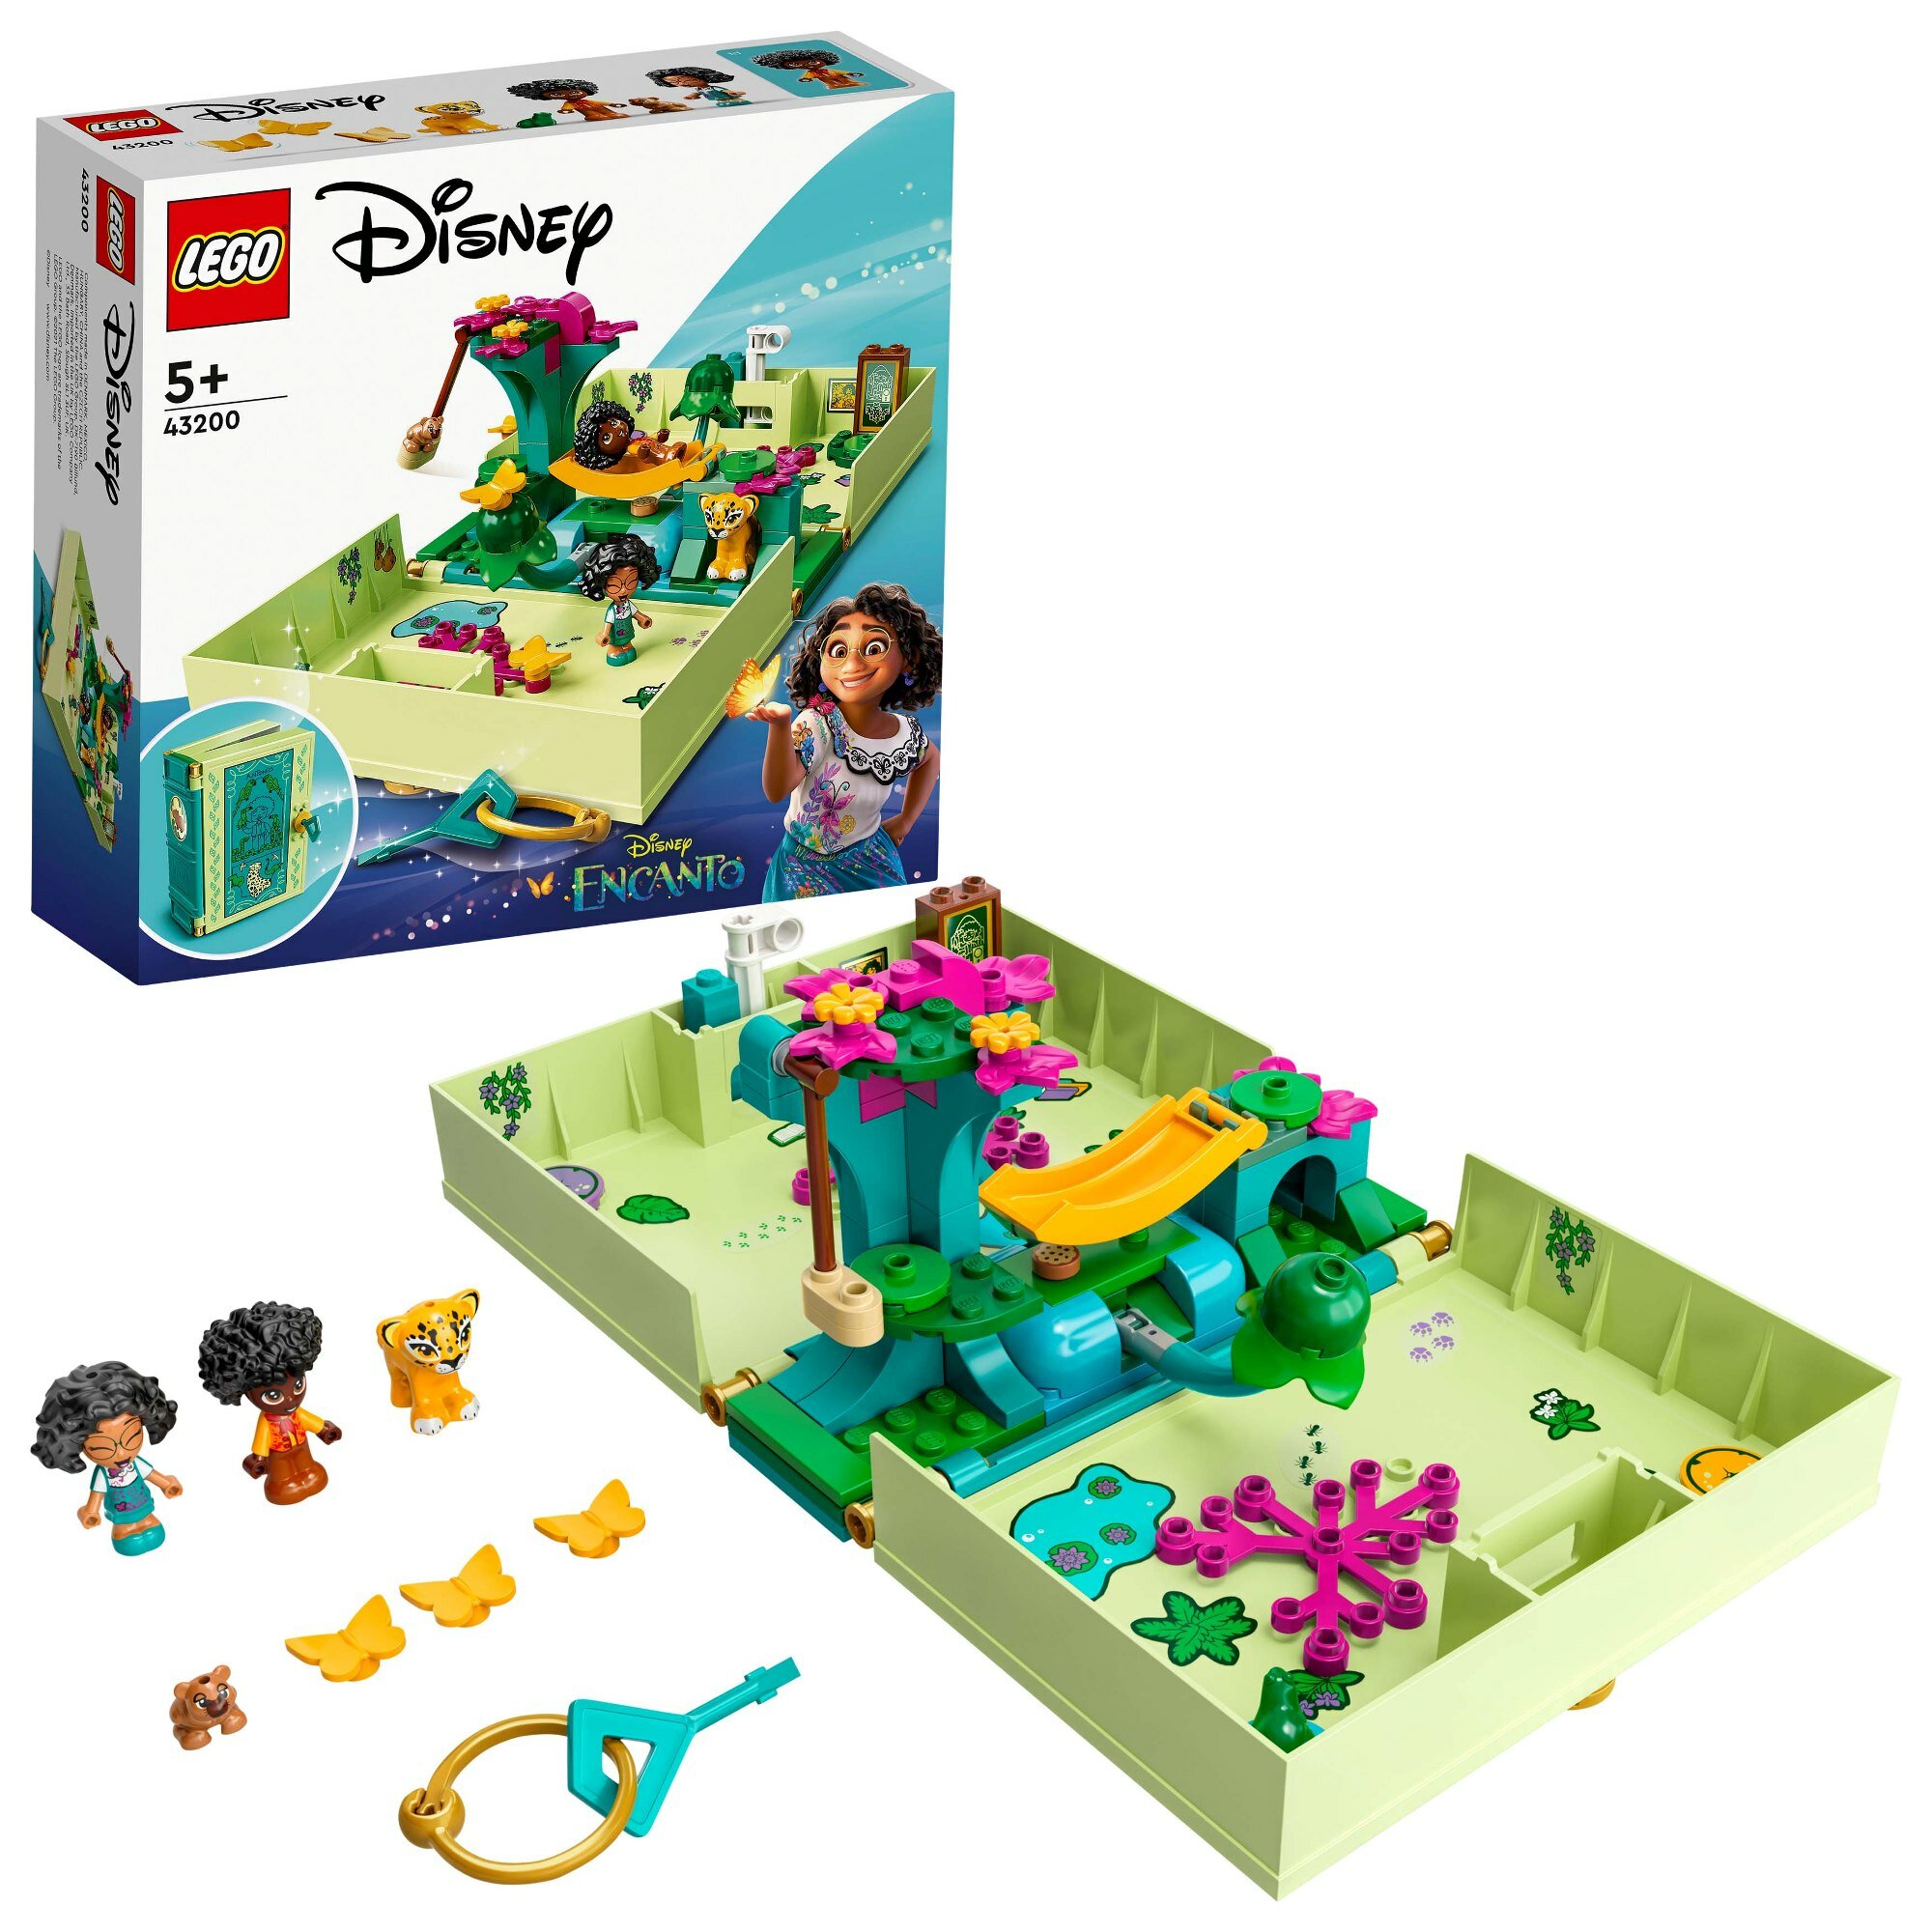 LEGO I Disney Princess Magiczne drzwi Antonia 43200 - niskie ceny i opinie  w Media Expert